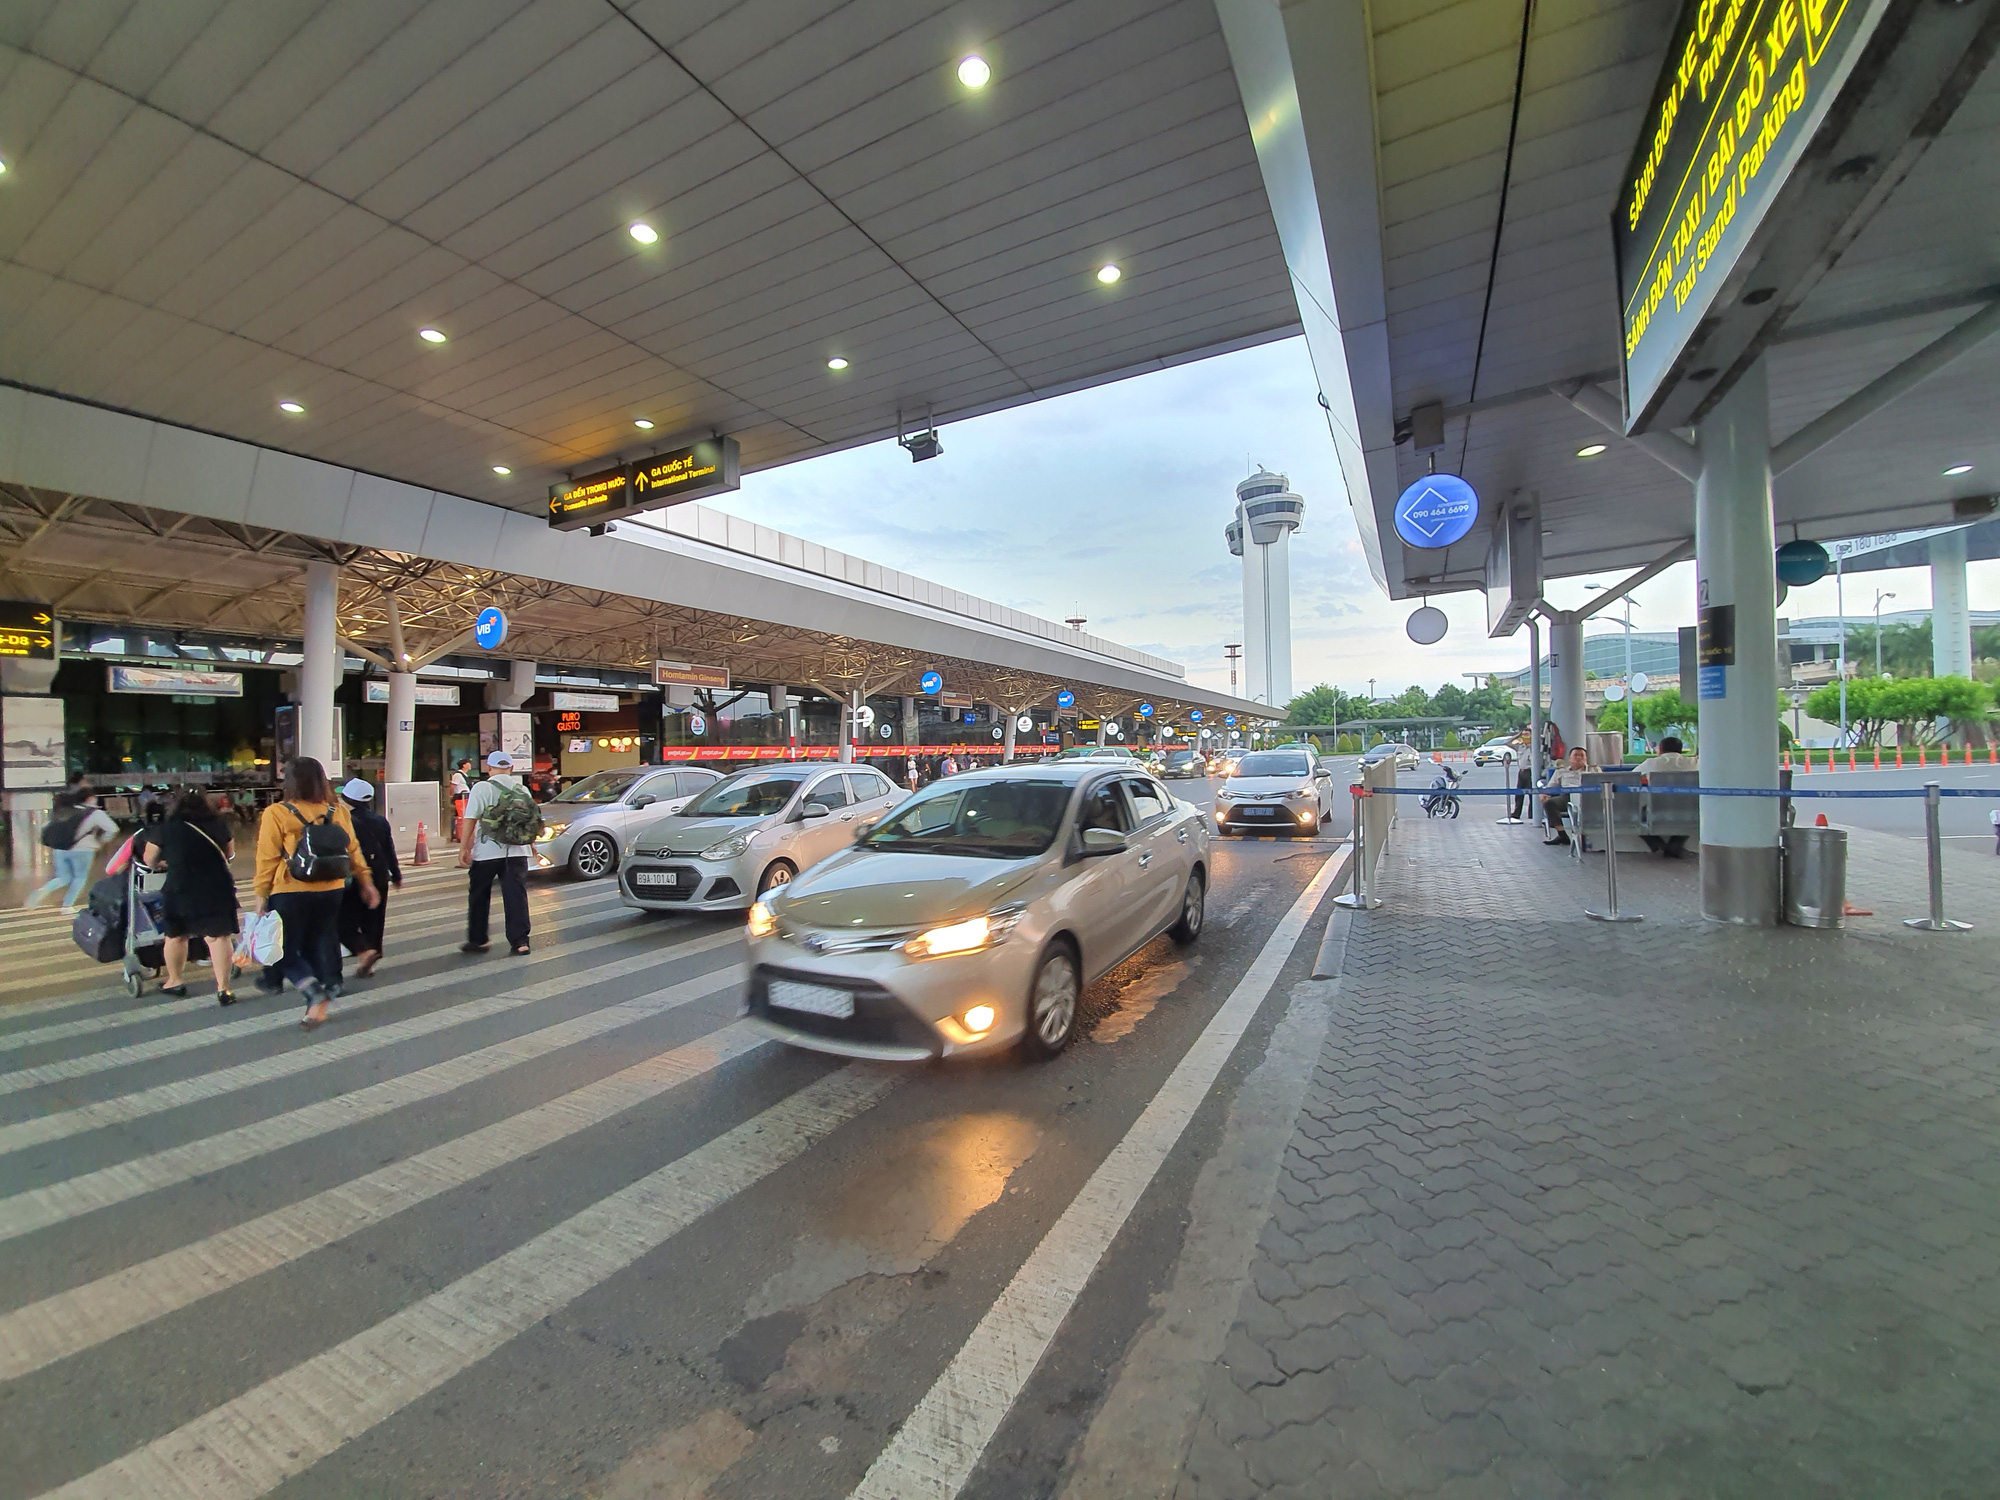 Dịch vụ taxi sân bay Tân Sơn Nhất đáp ứng nhu cầu đi lại của người dân